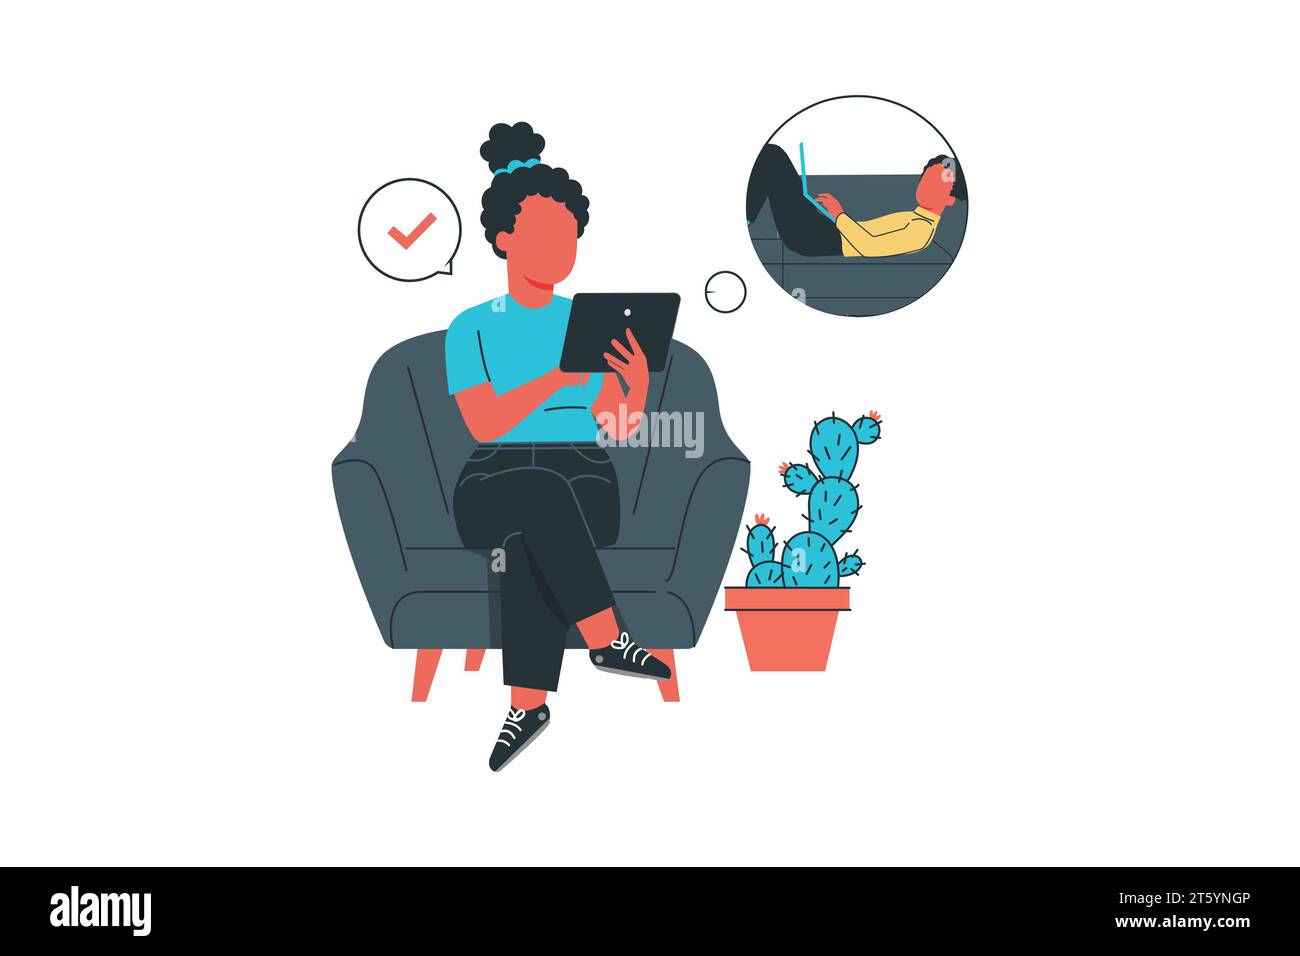 jeune femme assise dans un fauteuil et utilisant une tablette pc pour communiquer avec son compagnon. Illustration vectorielle plate. Illustration de Vecteur